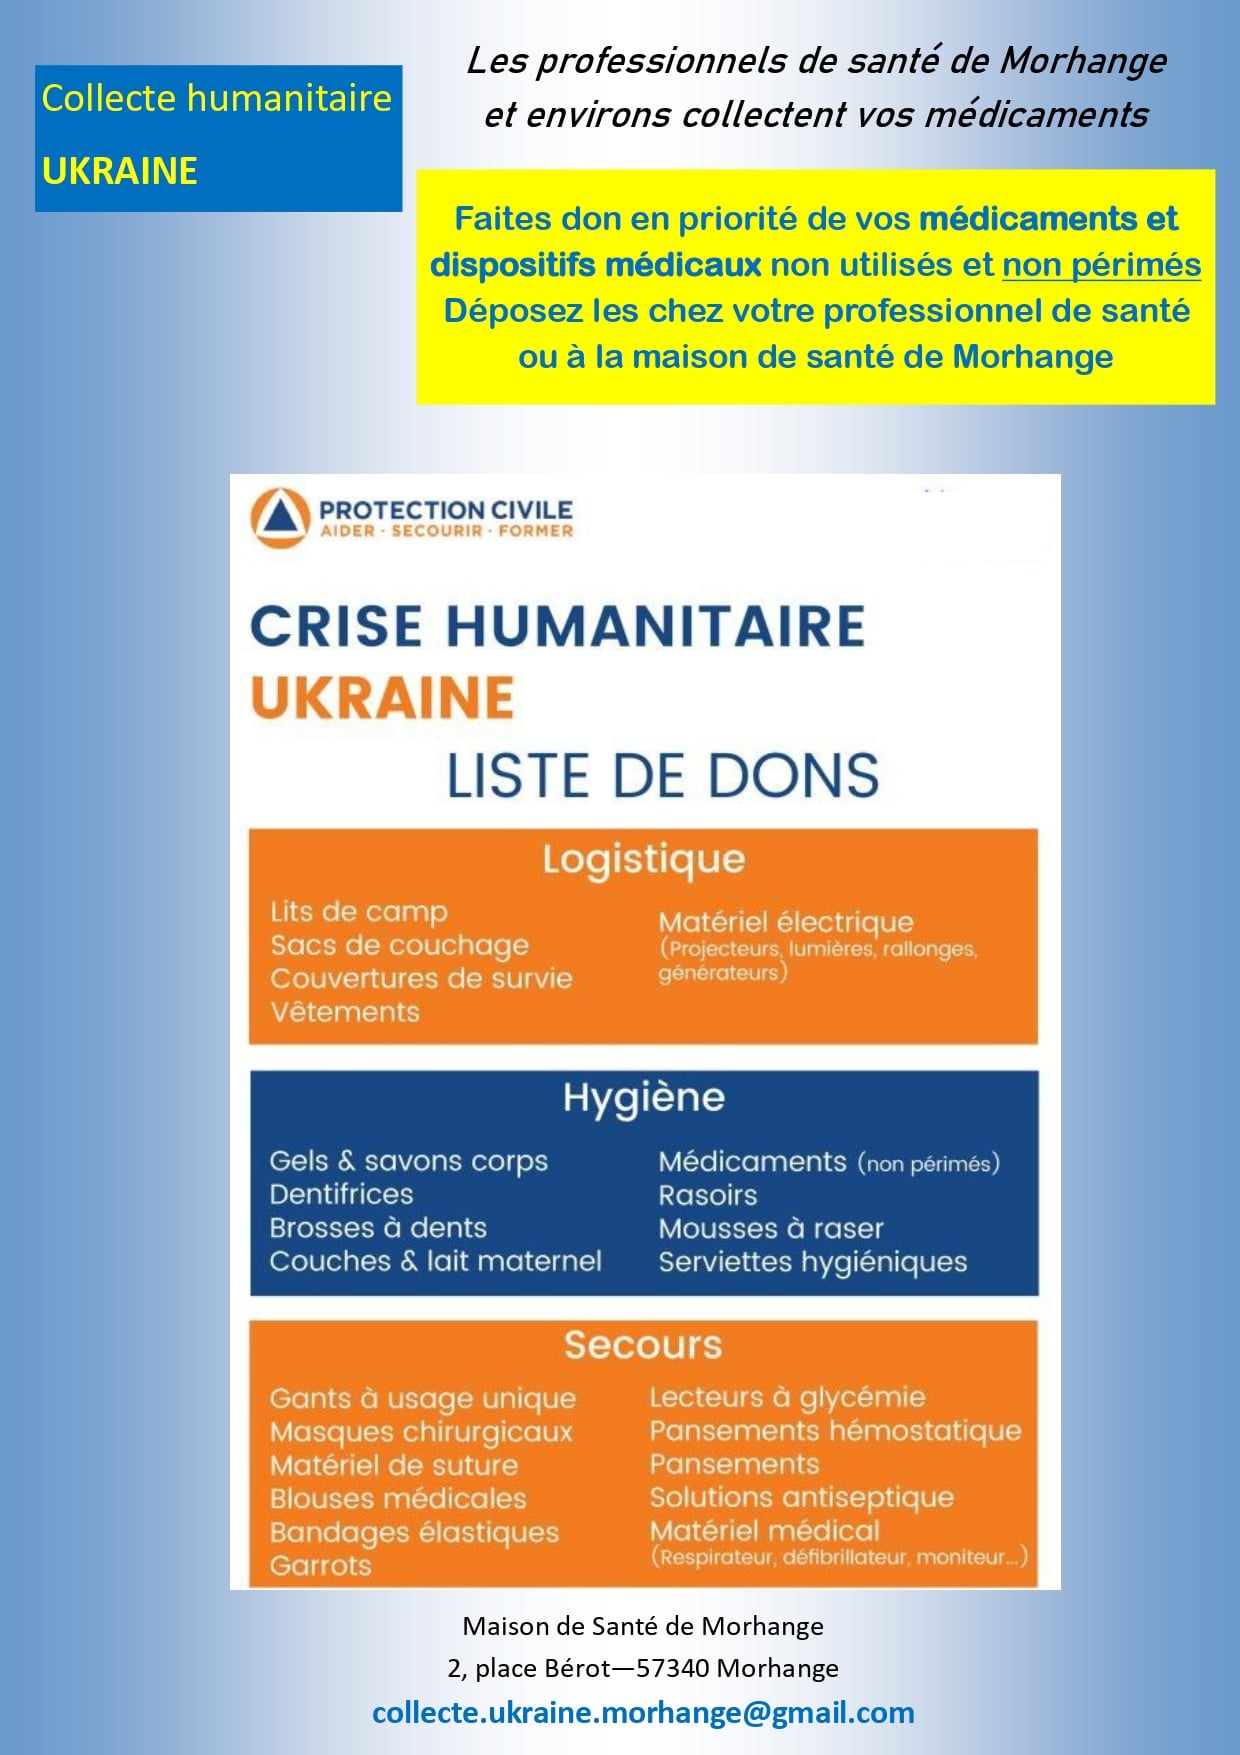 Solidarité UKraine : collecte de médicaments